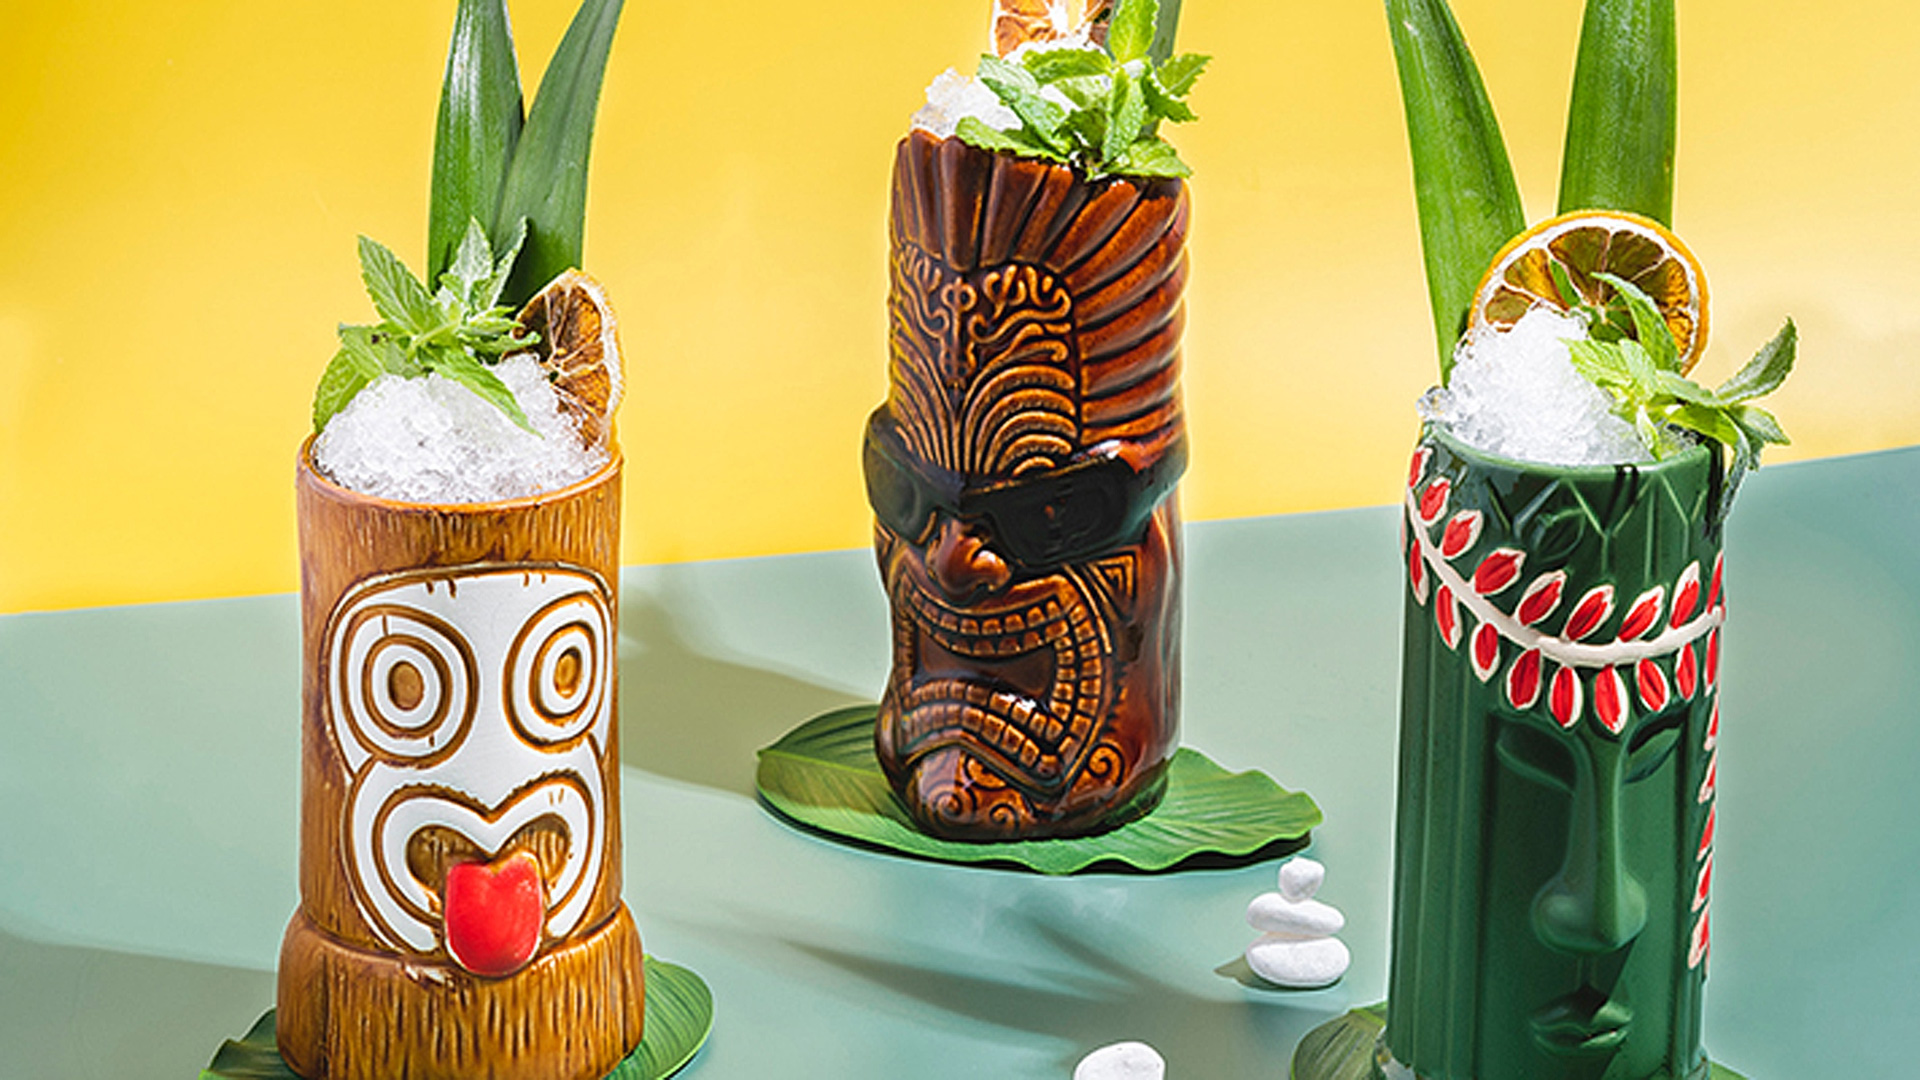 칵테일이 담겨있는 하와이 전통 동상 모양의 컵